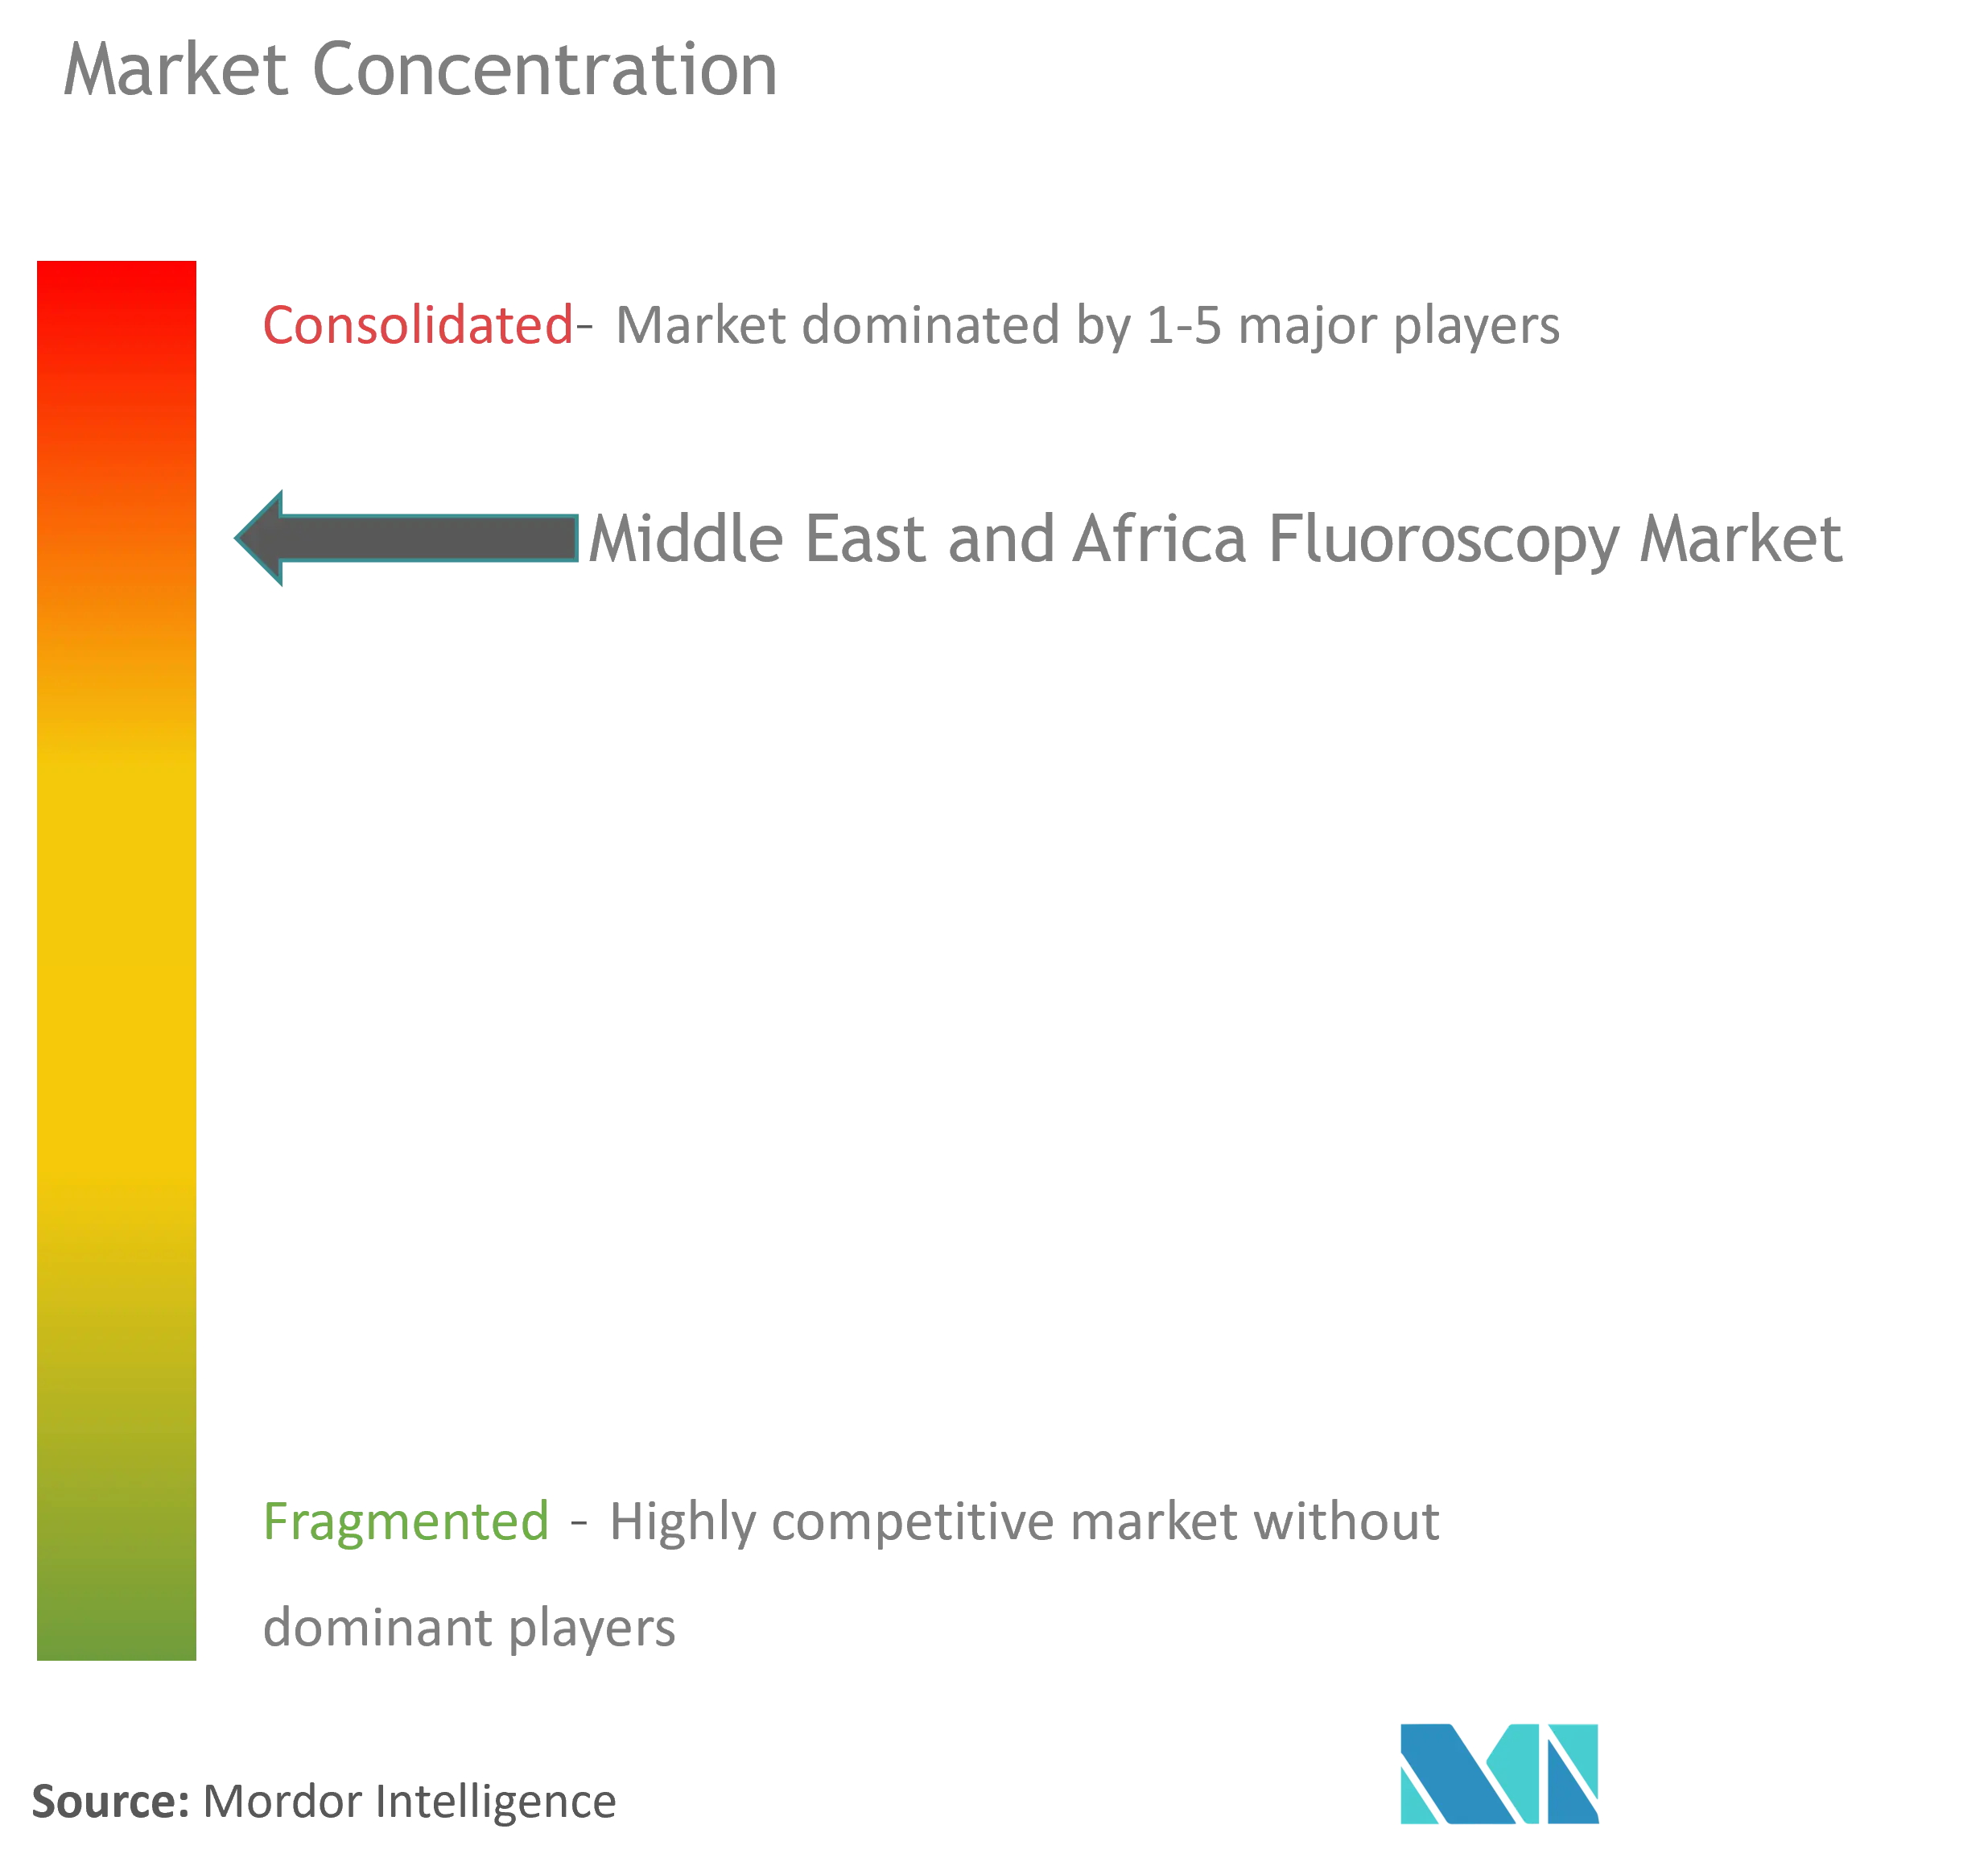 Concentración del mercado de fluoroscopia MEA